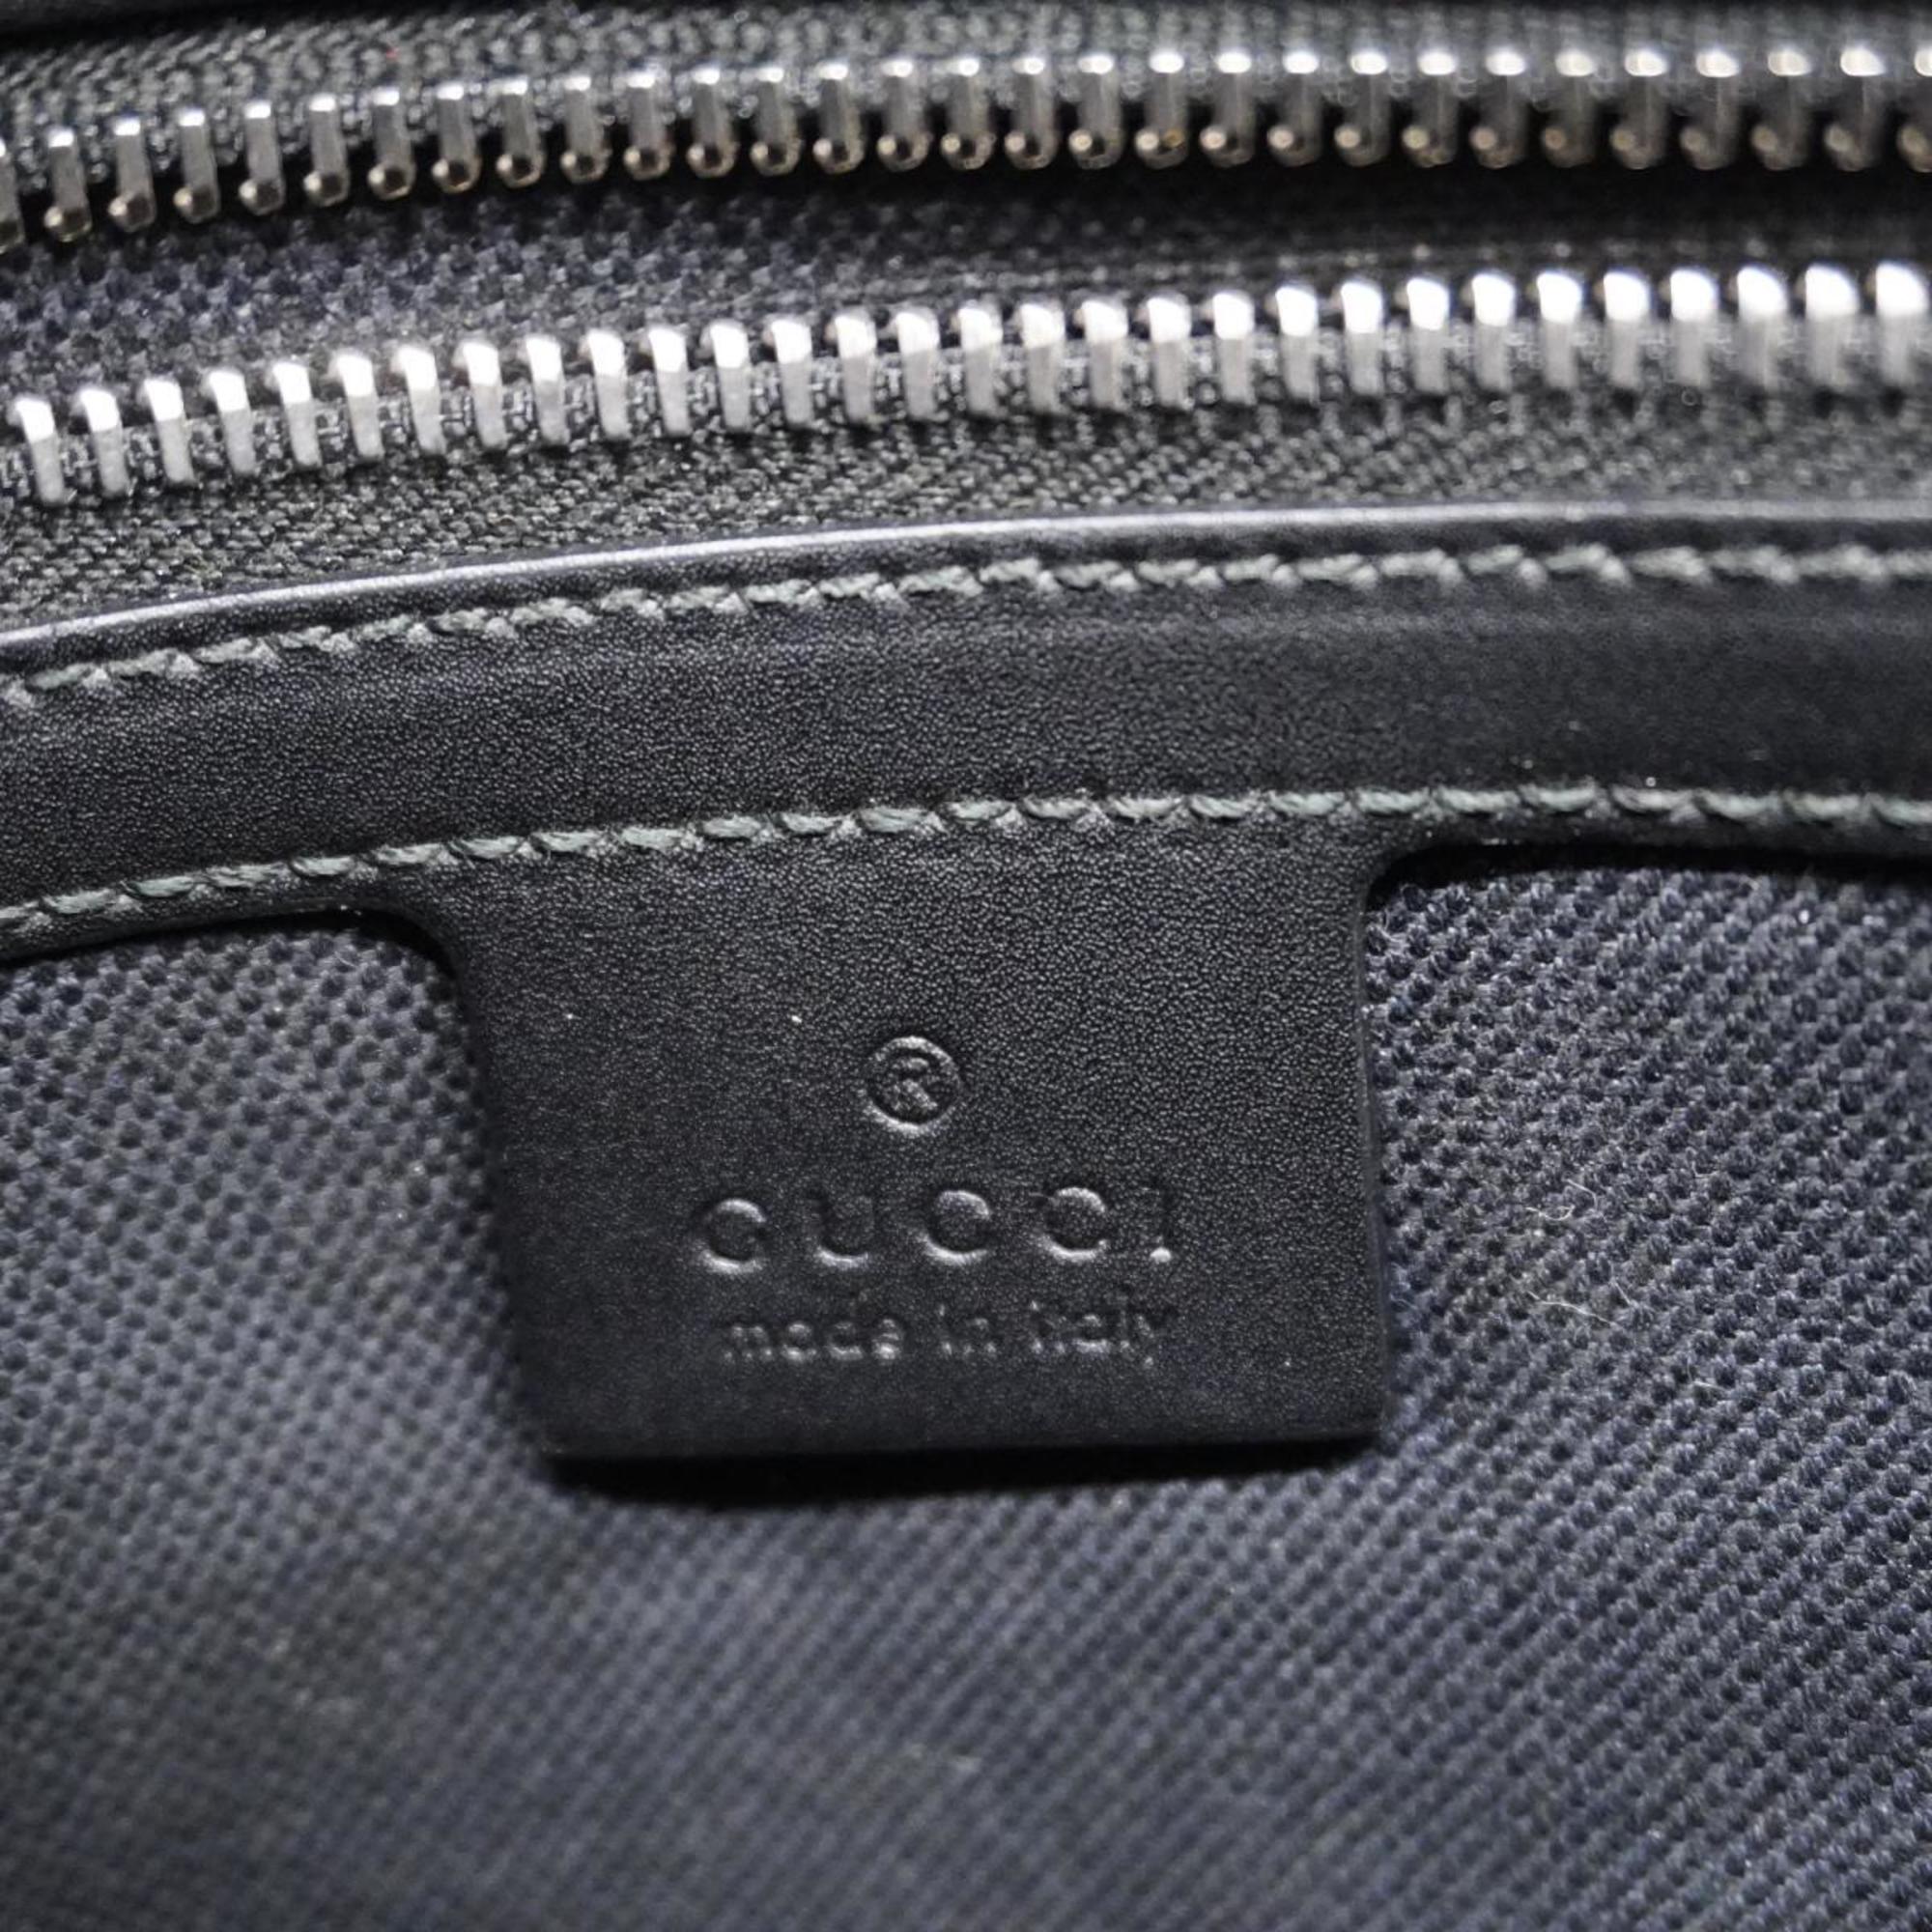 Gucci Shoulder Bag GG Supreme 474137 Canvas Leather Black Men's